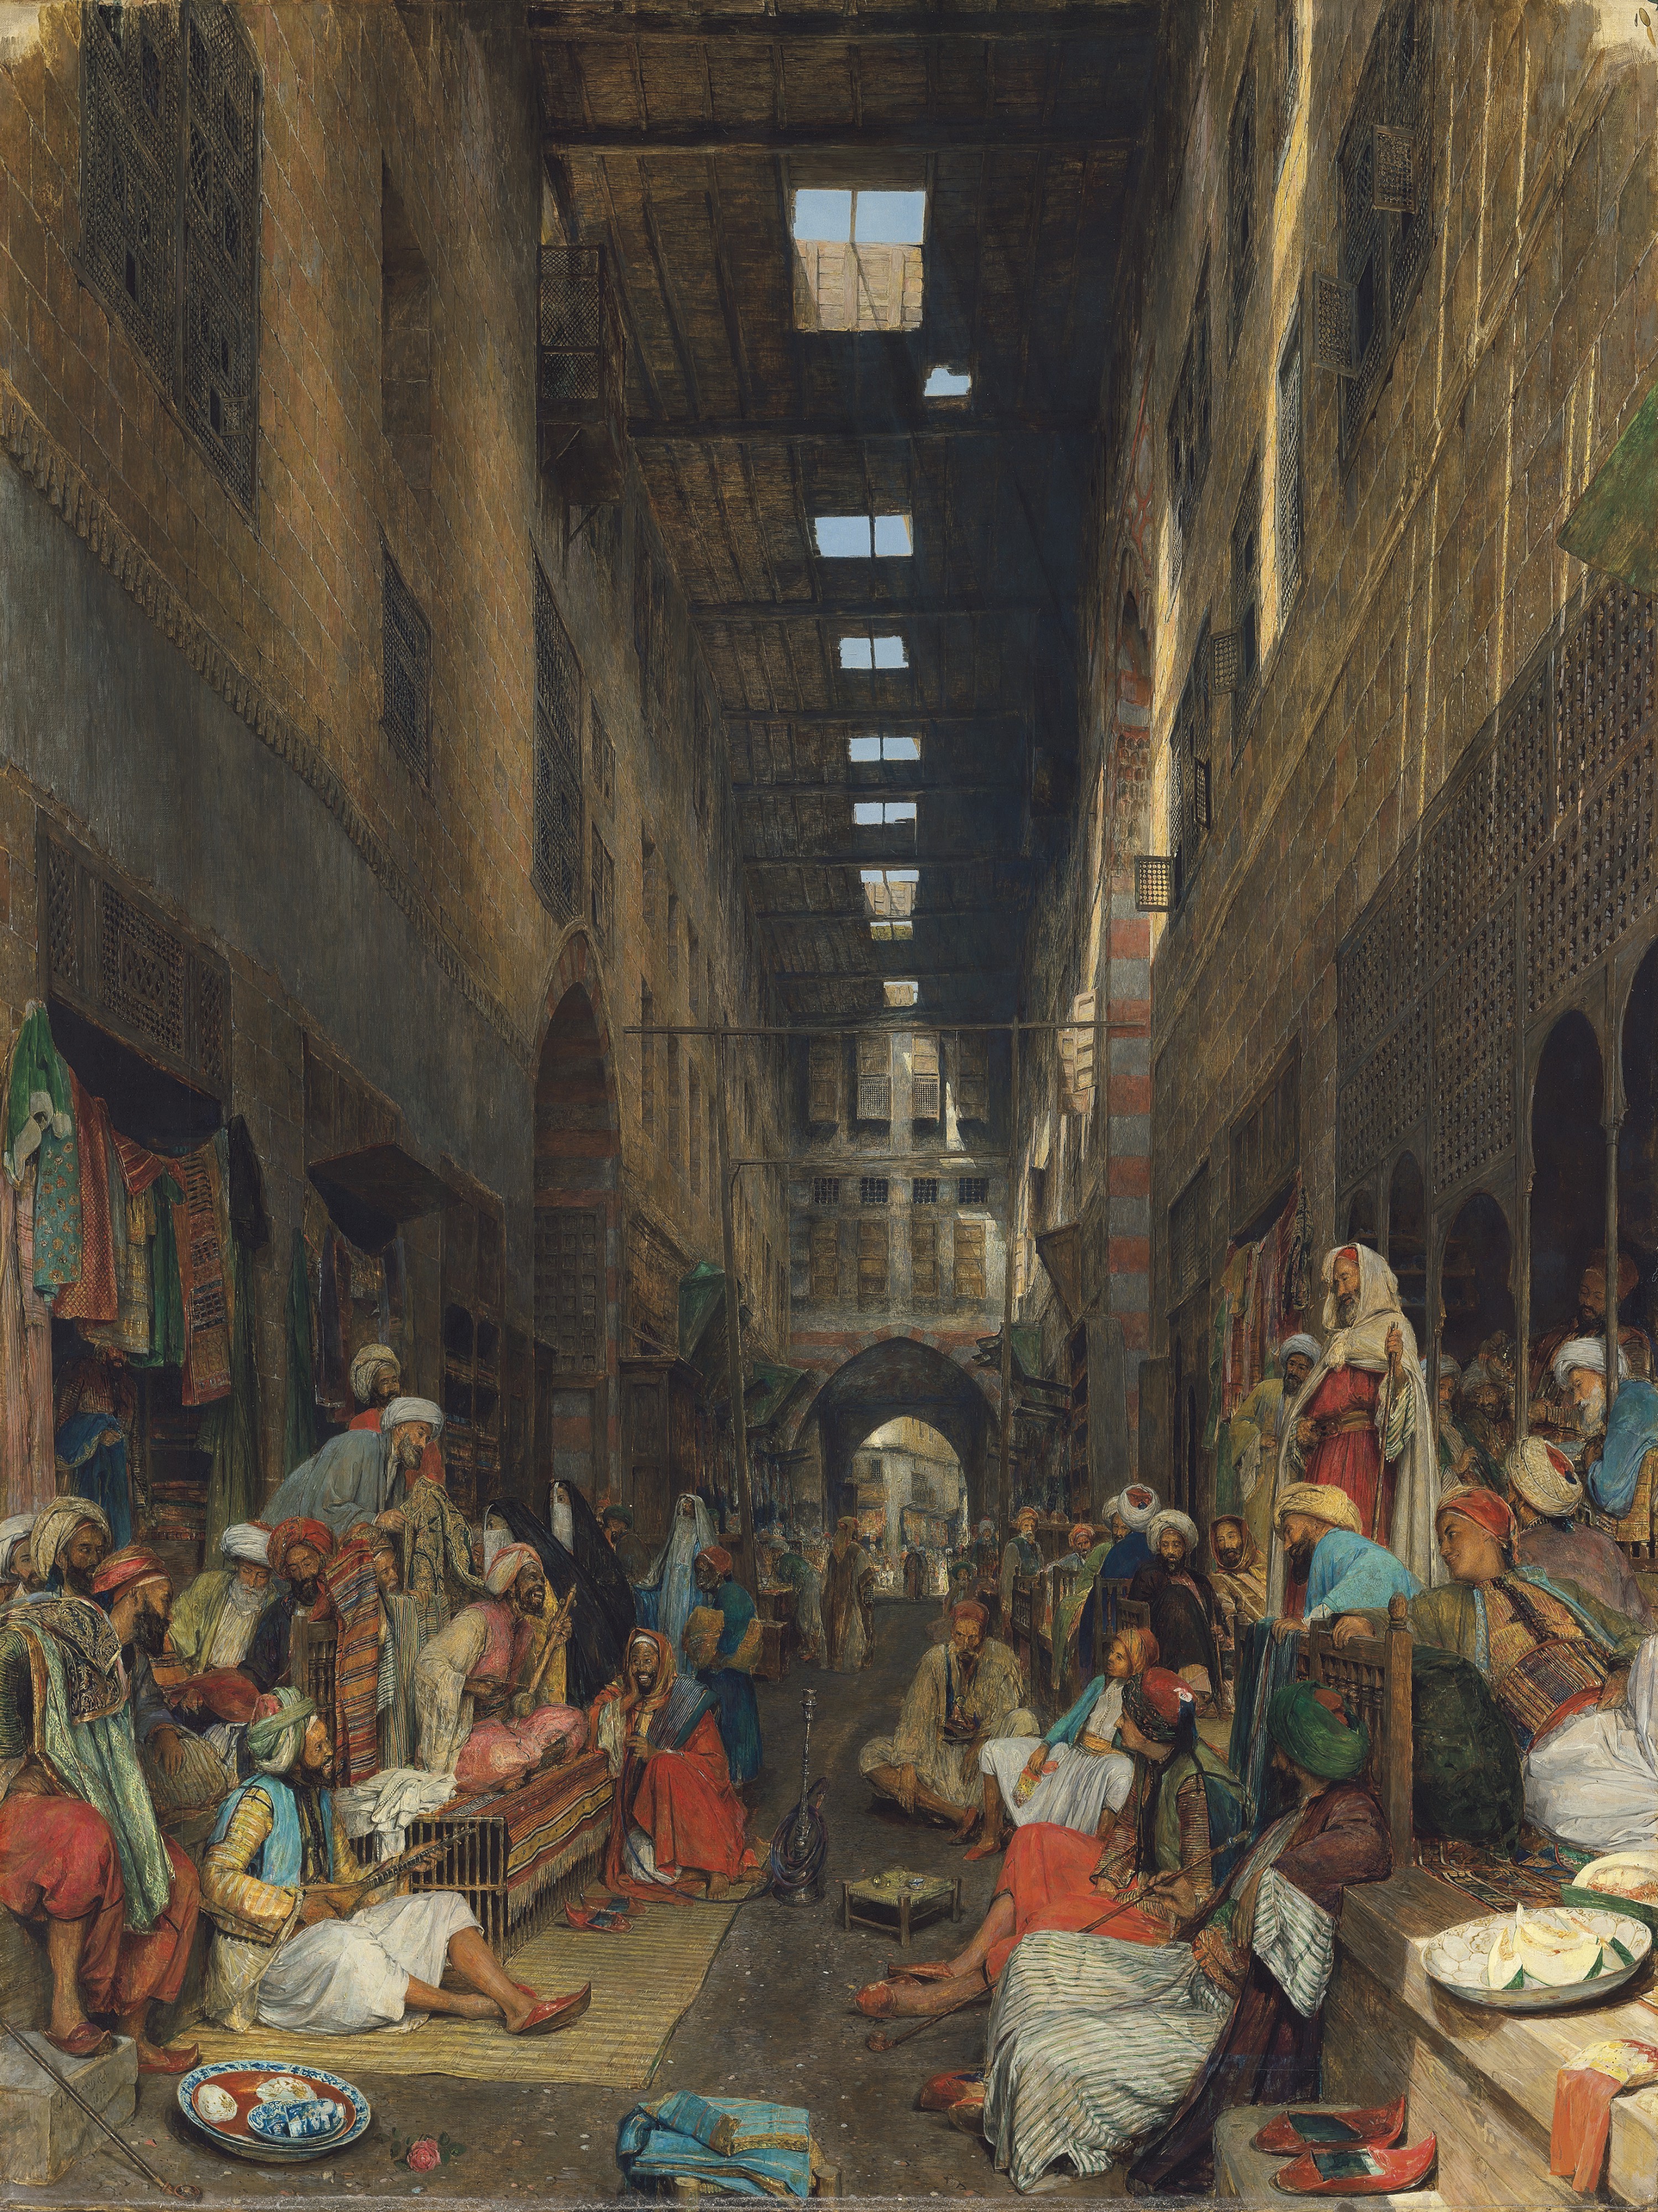 "البازار البيزنطي في خان الخليلي بالقاهرة" تتصدّر مزاد الفنون الاستشراقية في لندن